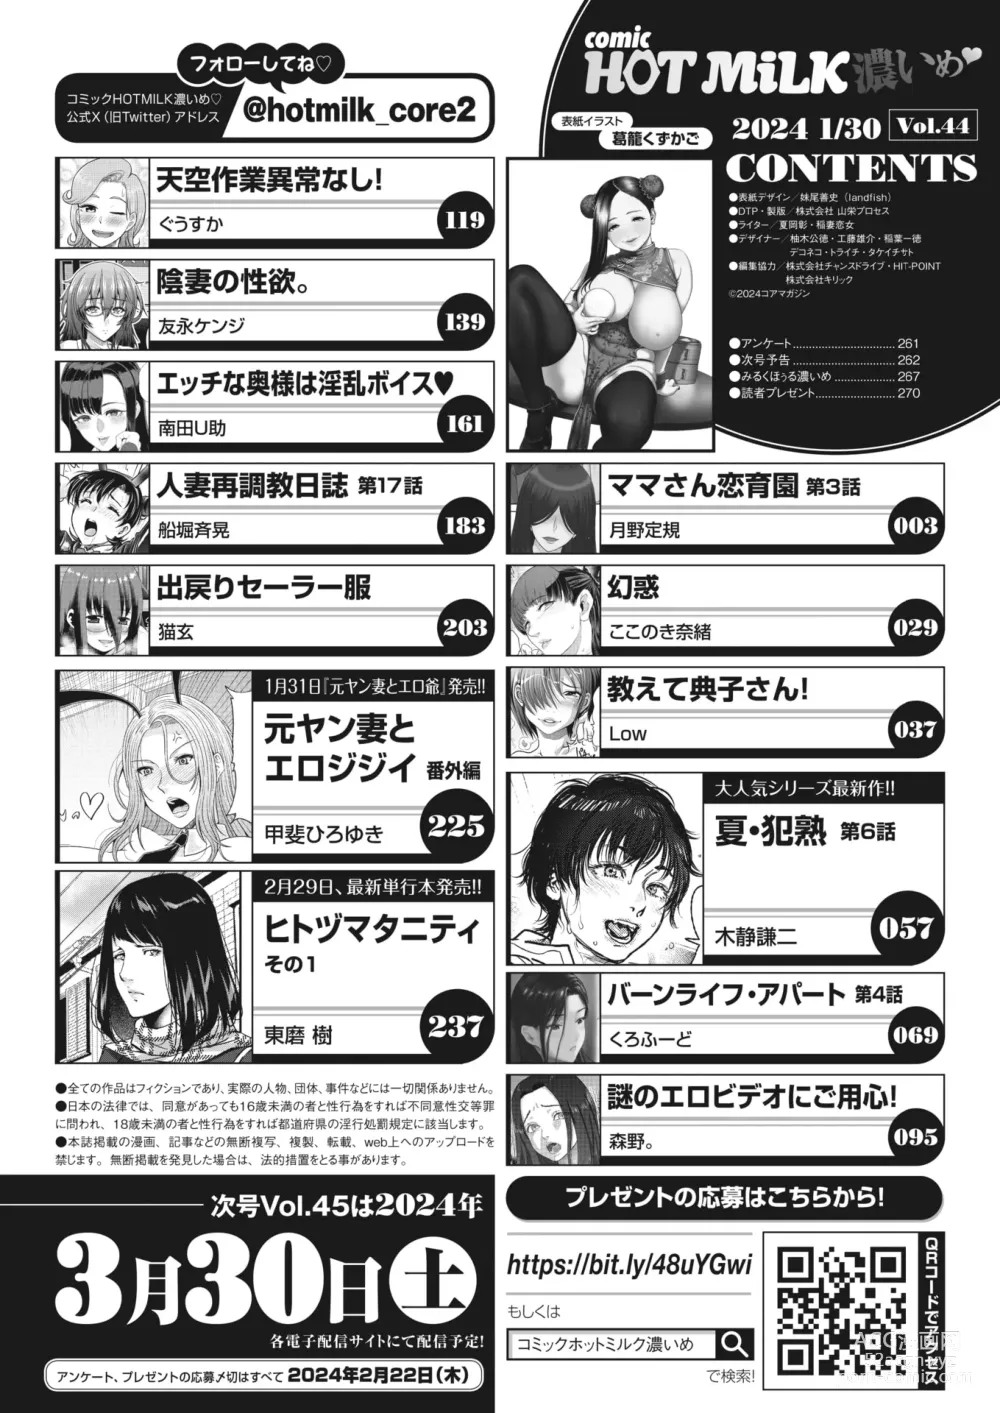 Page 3 of manga COMIC HOTMiLK Koime Vol. 44